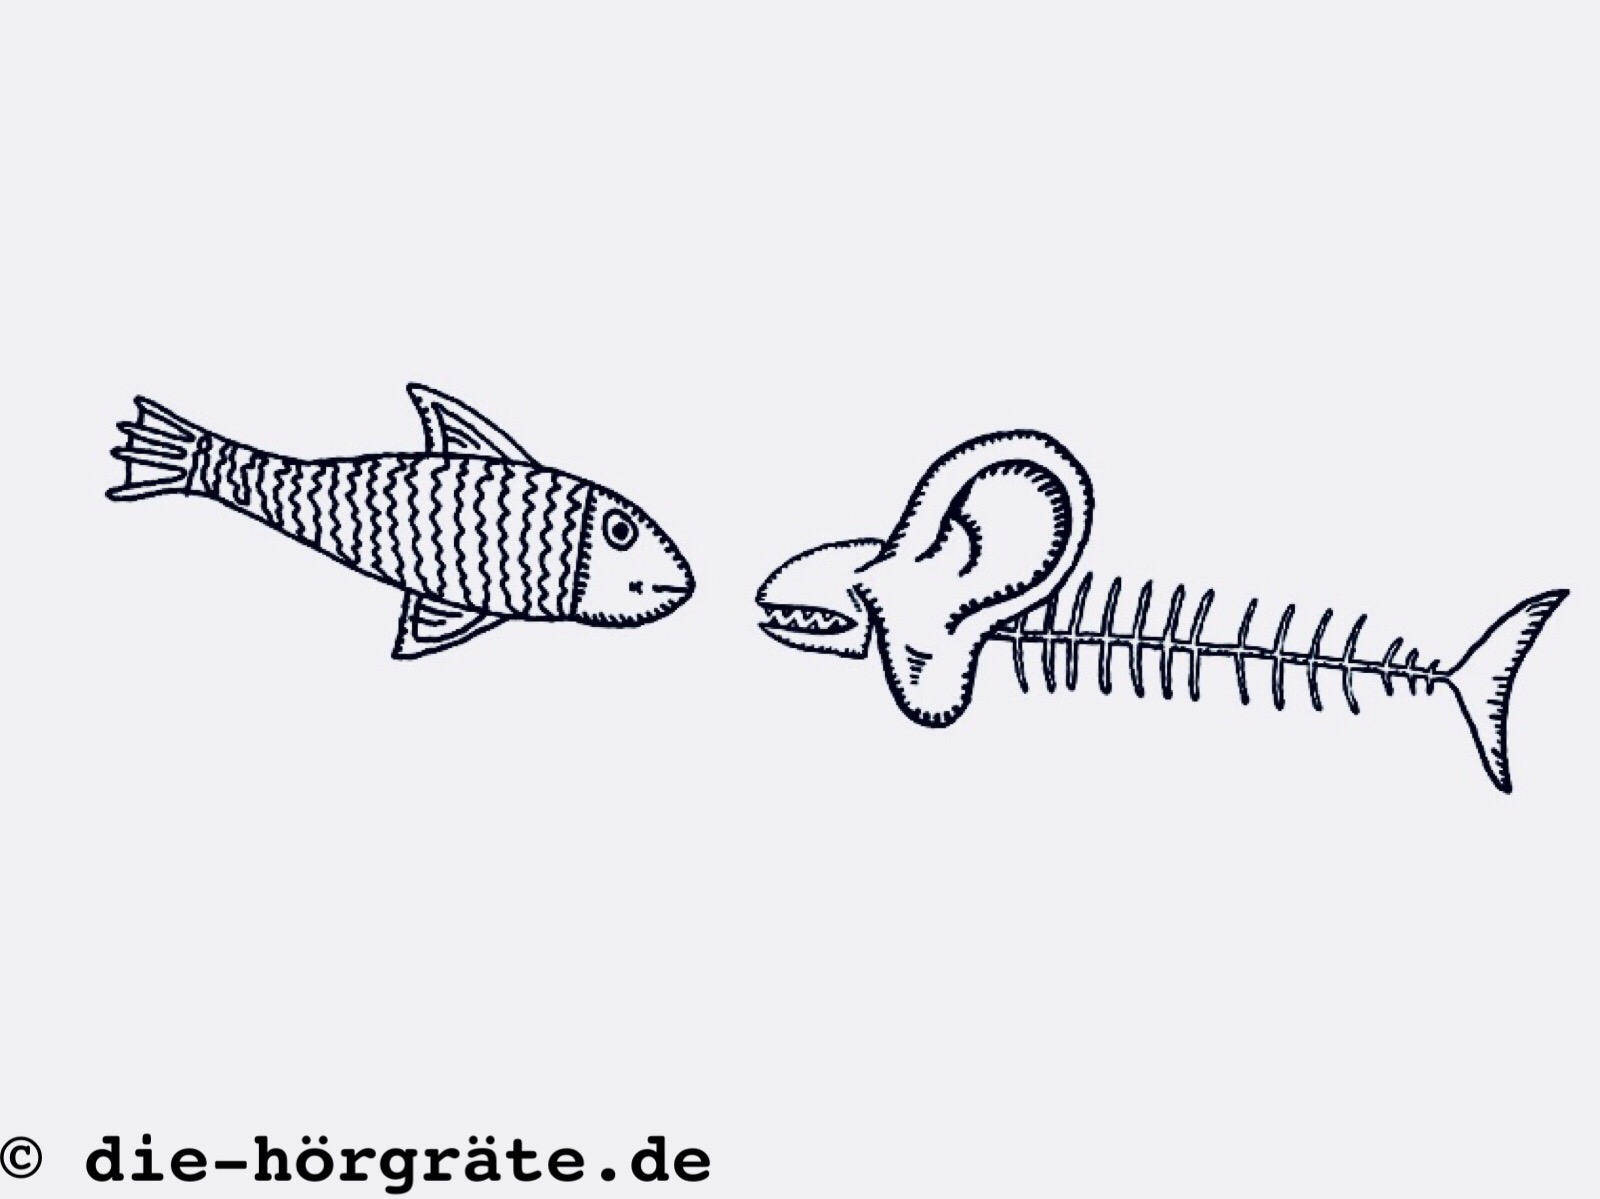 Zeichnungen von der Hörgräte und einem Fisch, sie sehen aus, als würden sie sich unterhalten